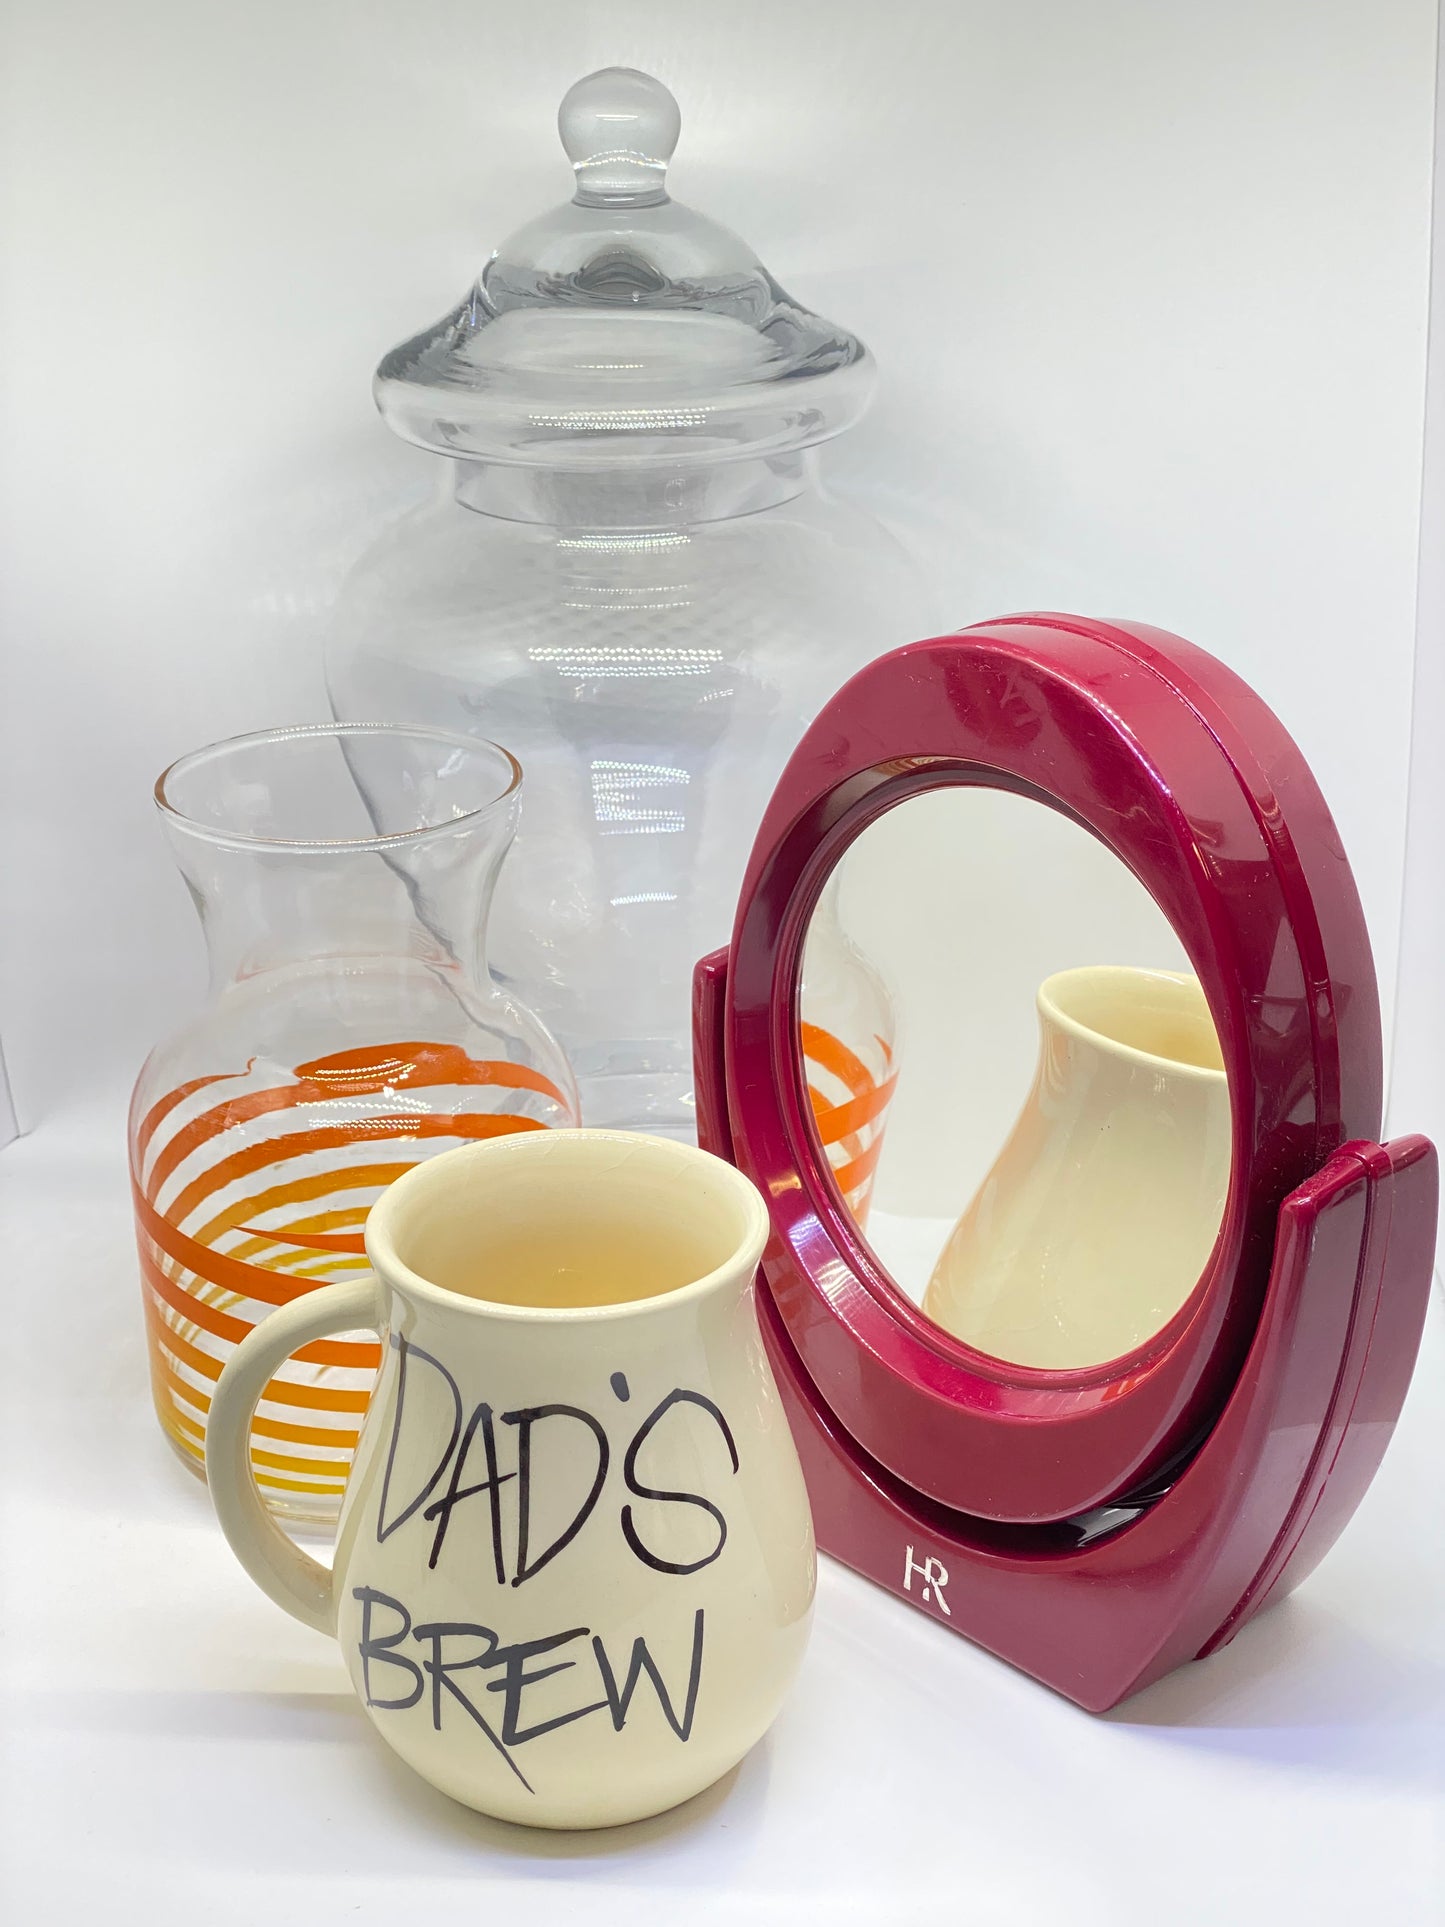 Retro Hanstan Australia  'Dads Brew' cup - a collectors piece!